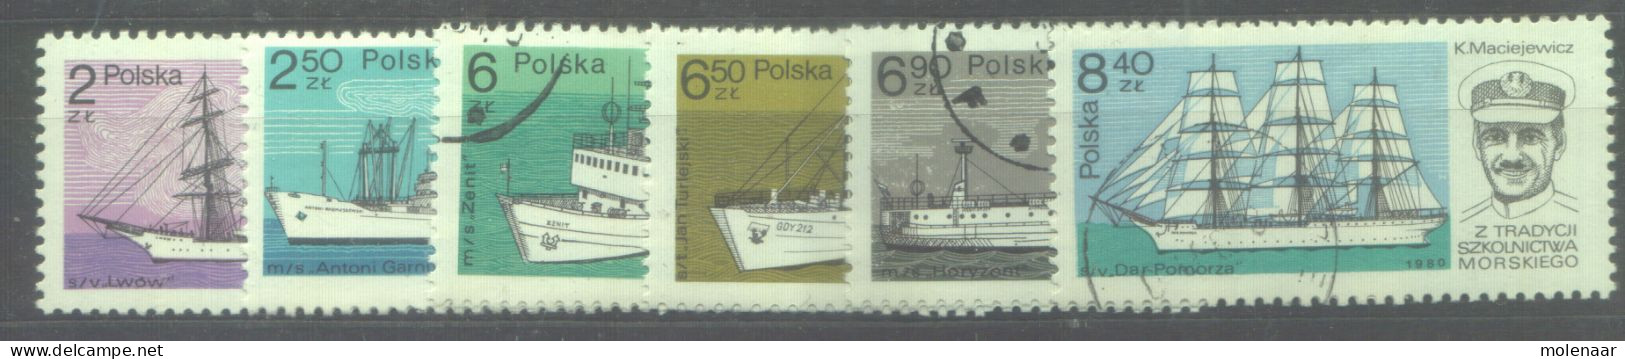 Postzegels > Europa > Polen > 1944-.... Republiek > 1981-90 > Gebruikt 2701-2706 (12187) - Gebruikt